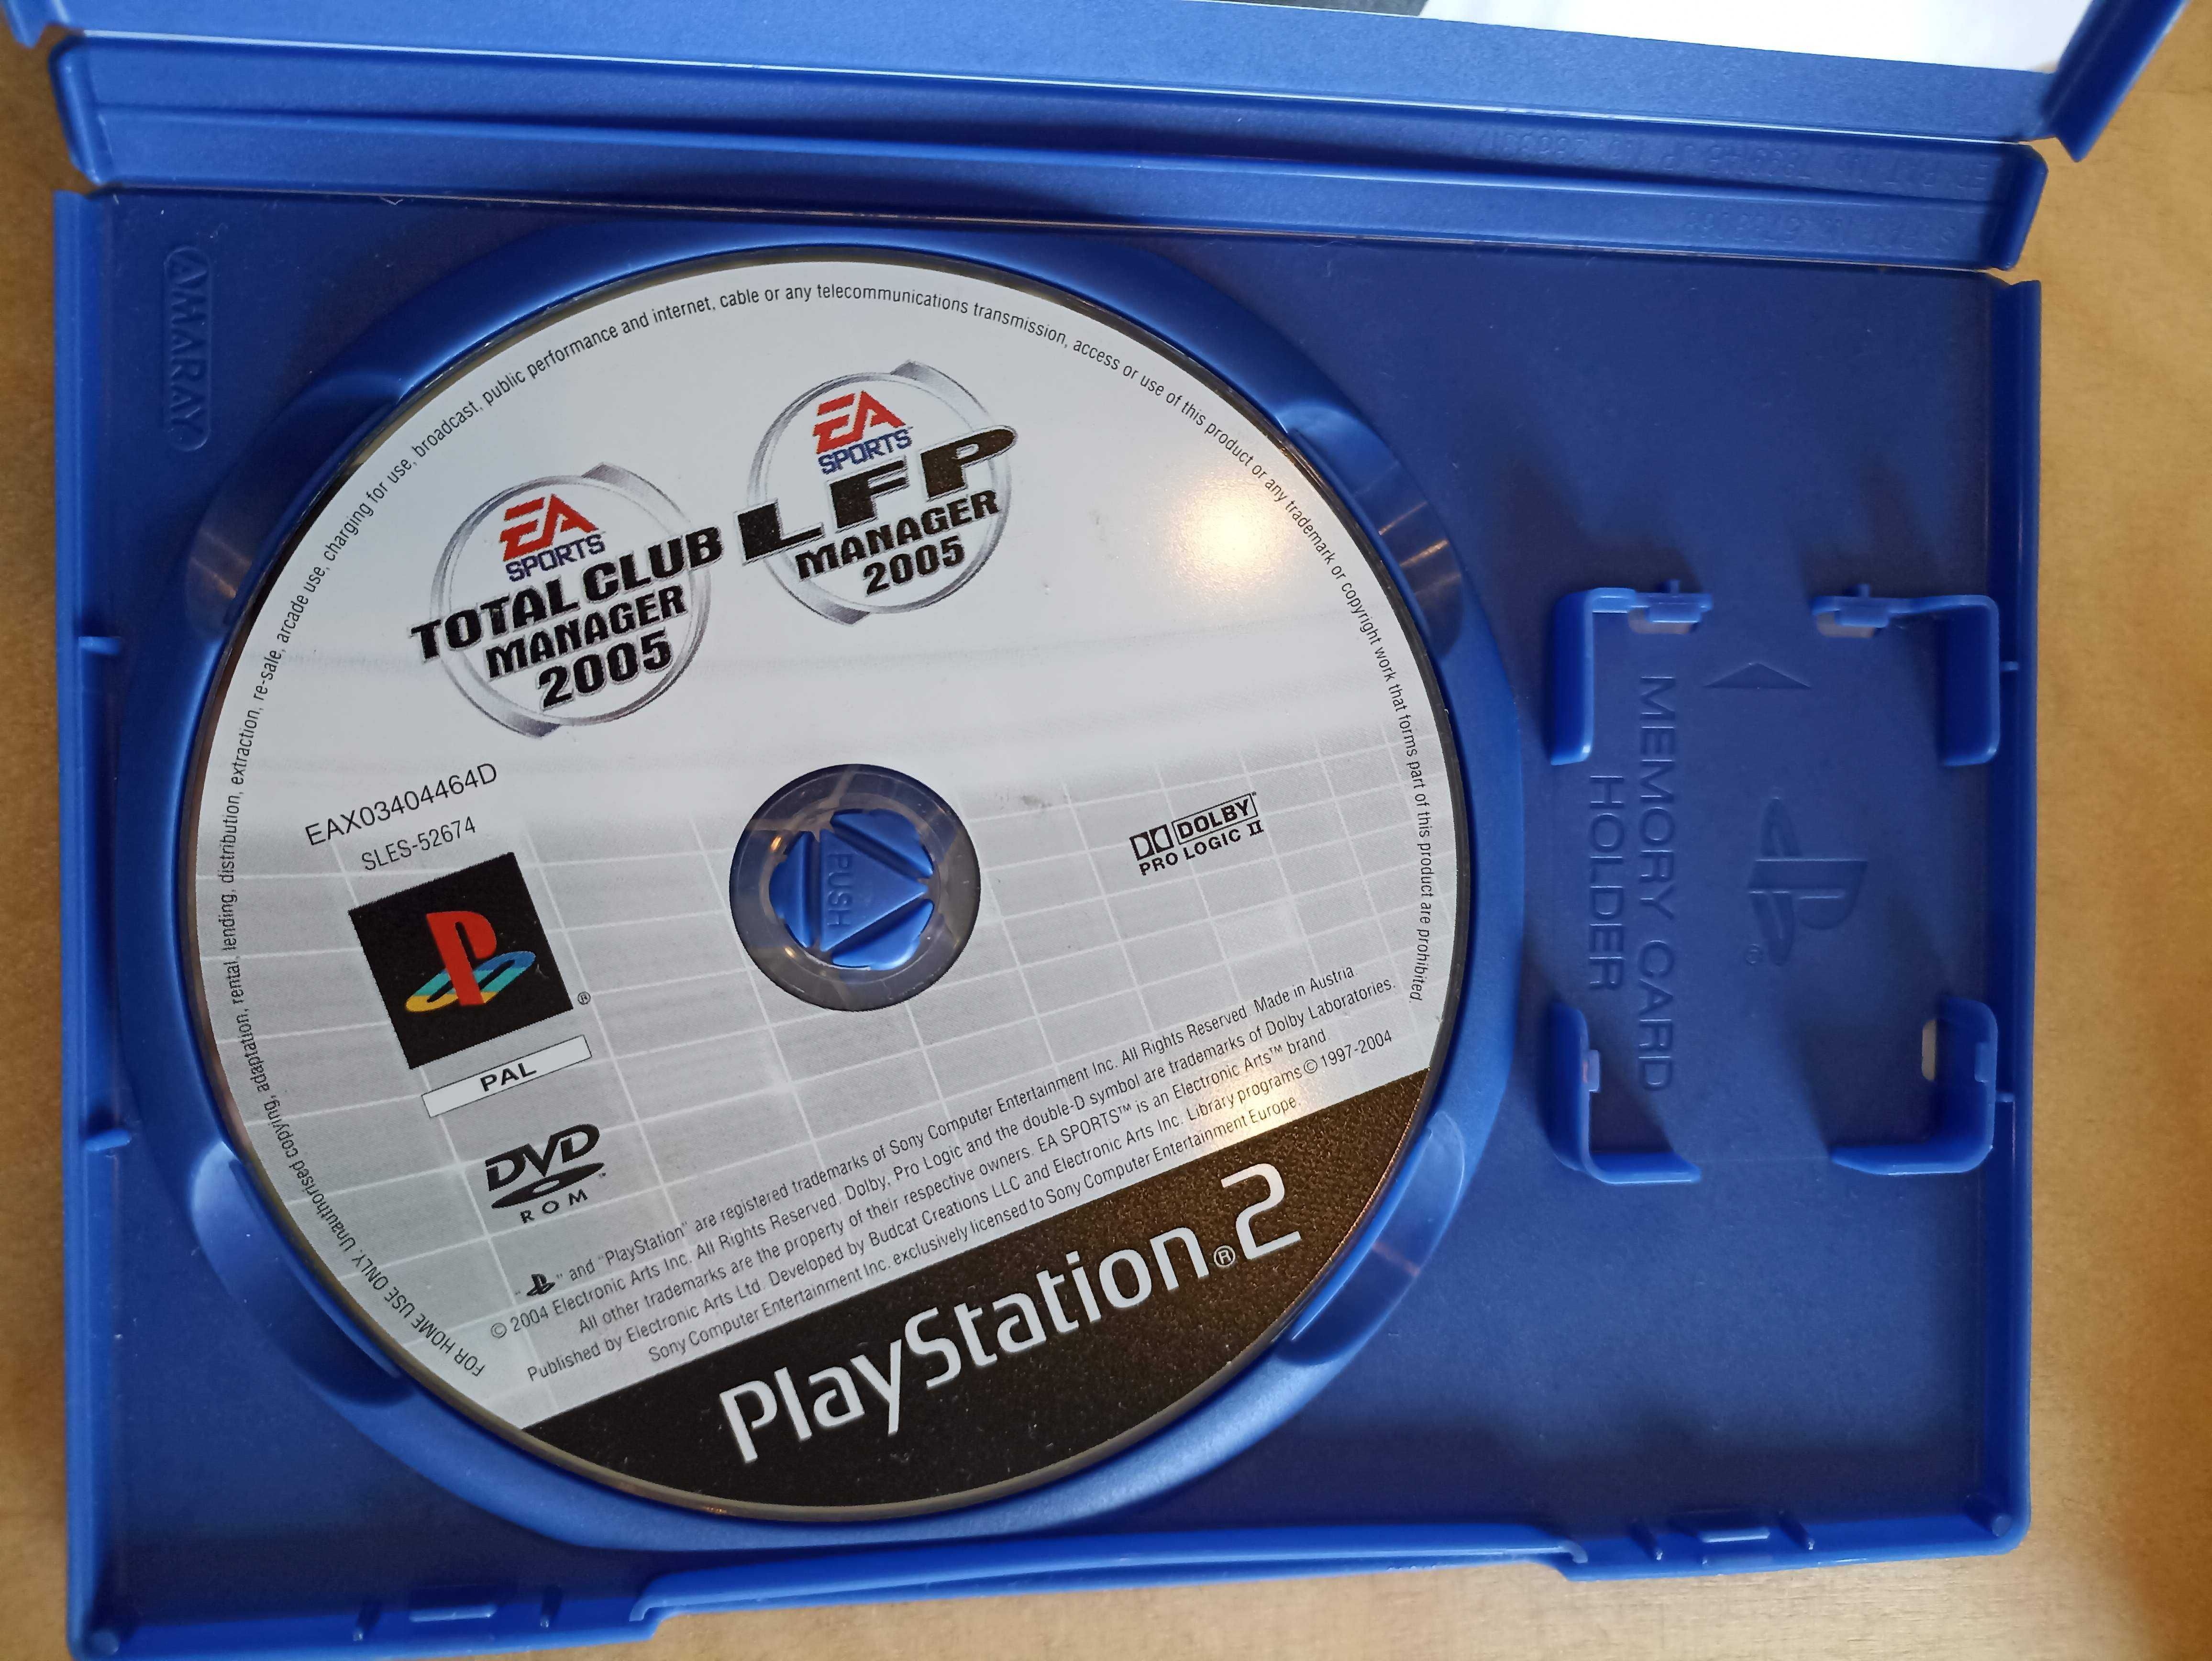 Jogos para a PlayStation 2